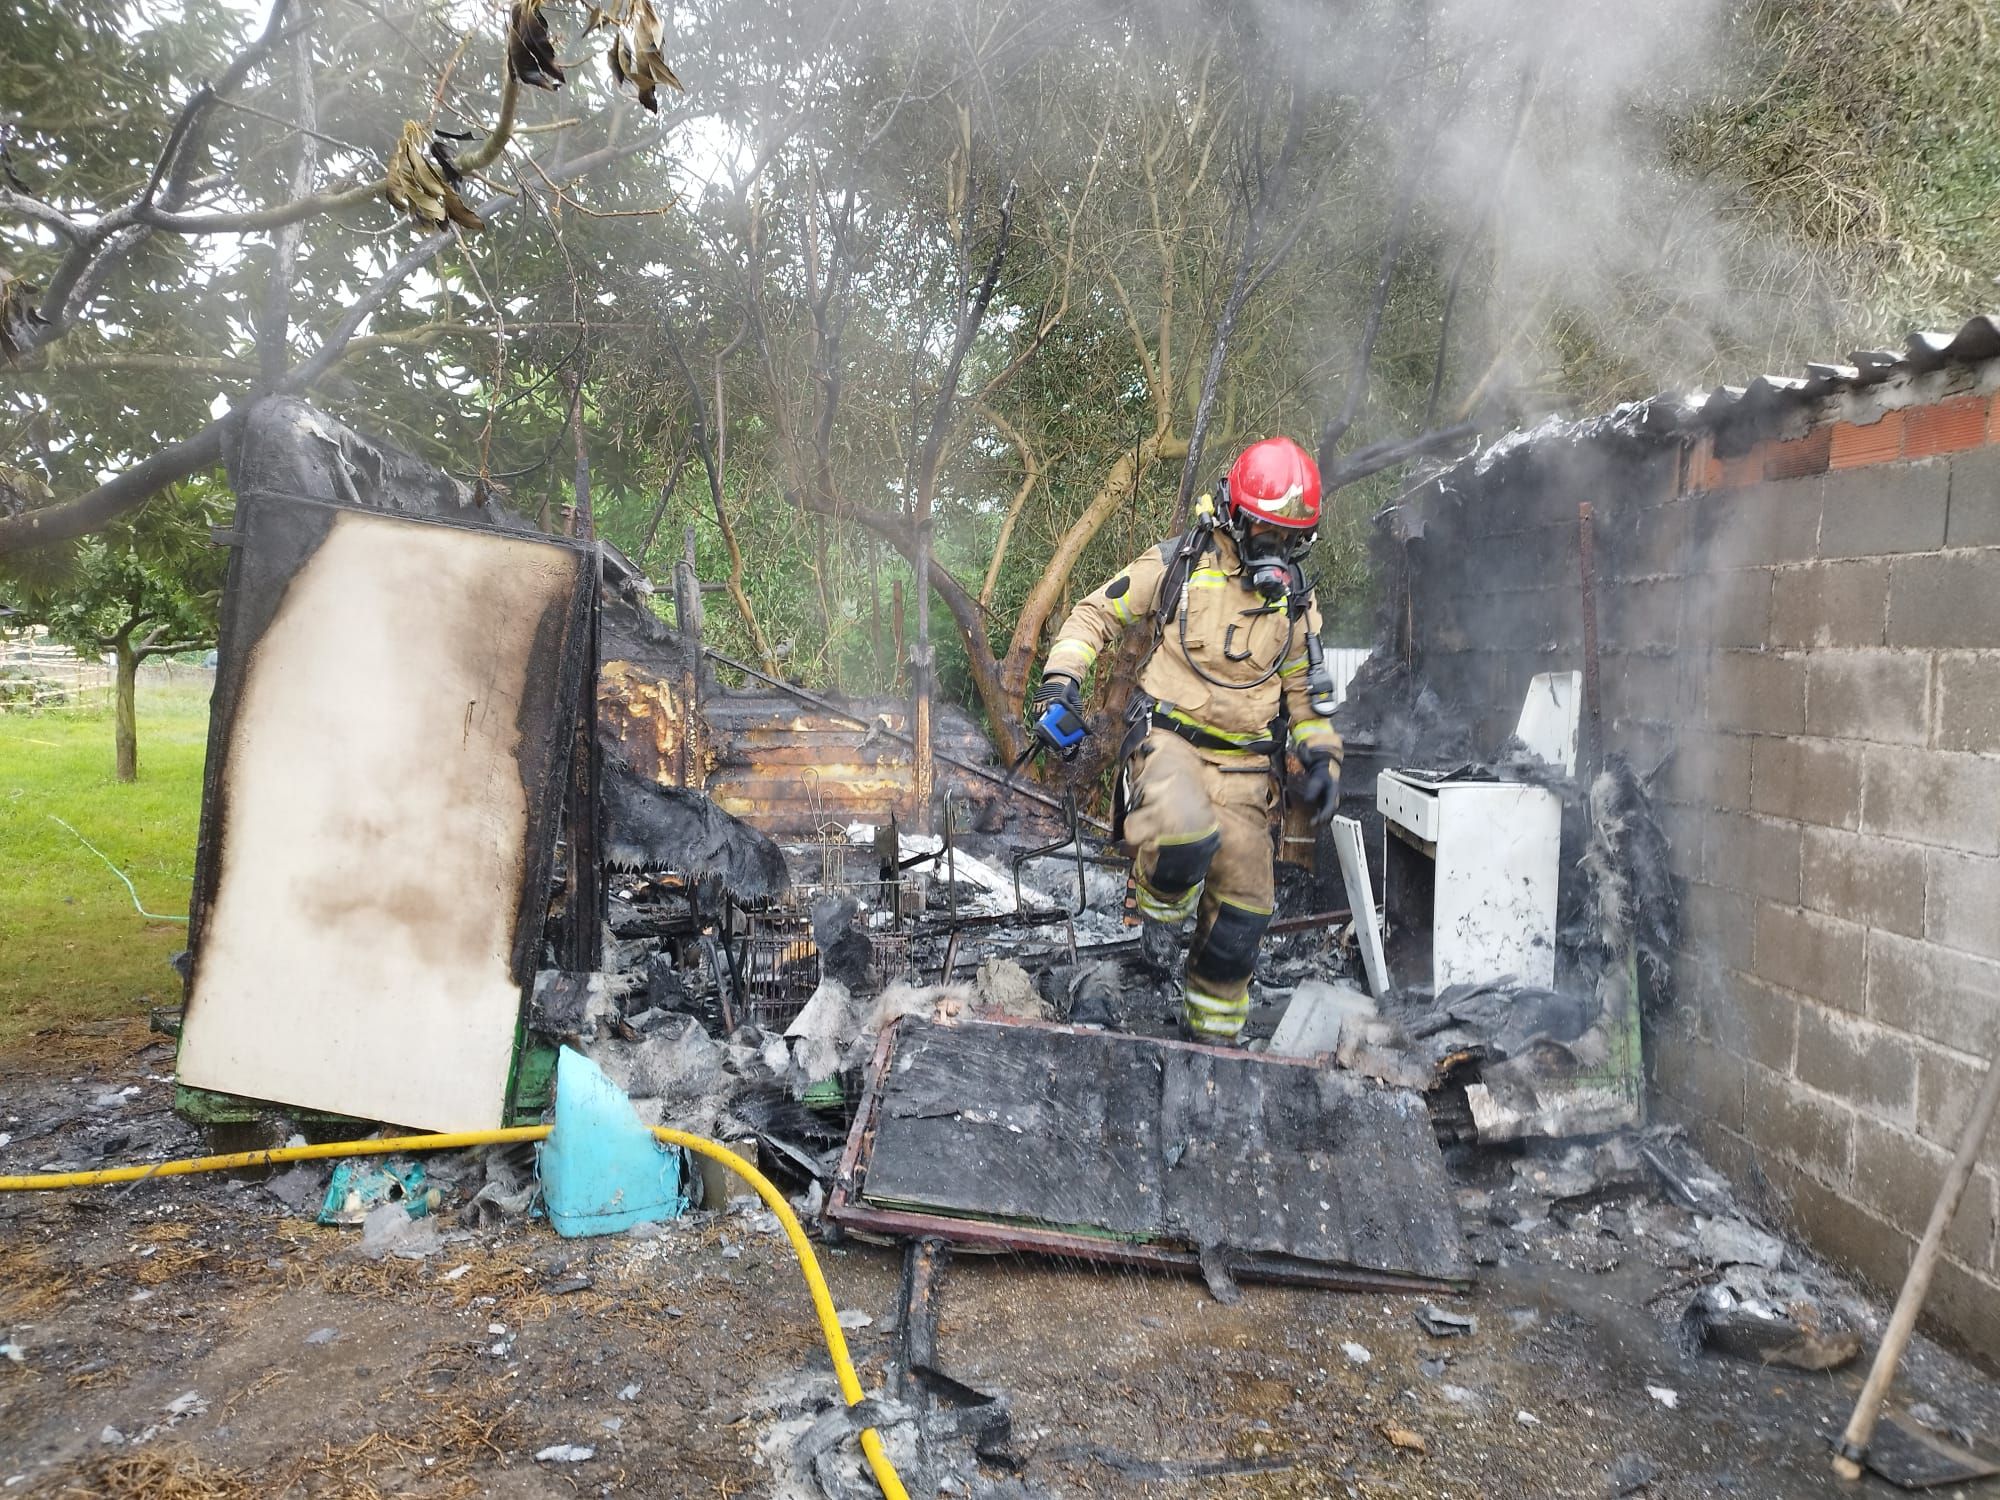 Una persona herida al sufrir quemaduras por el incendio en un galpón en Oleiros